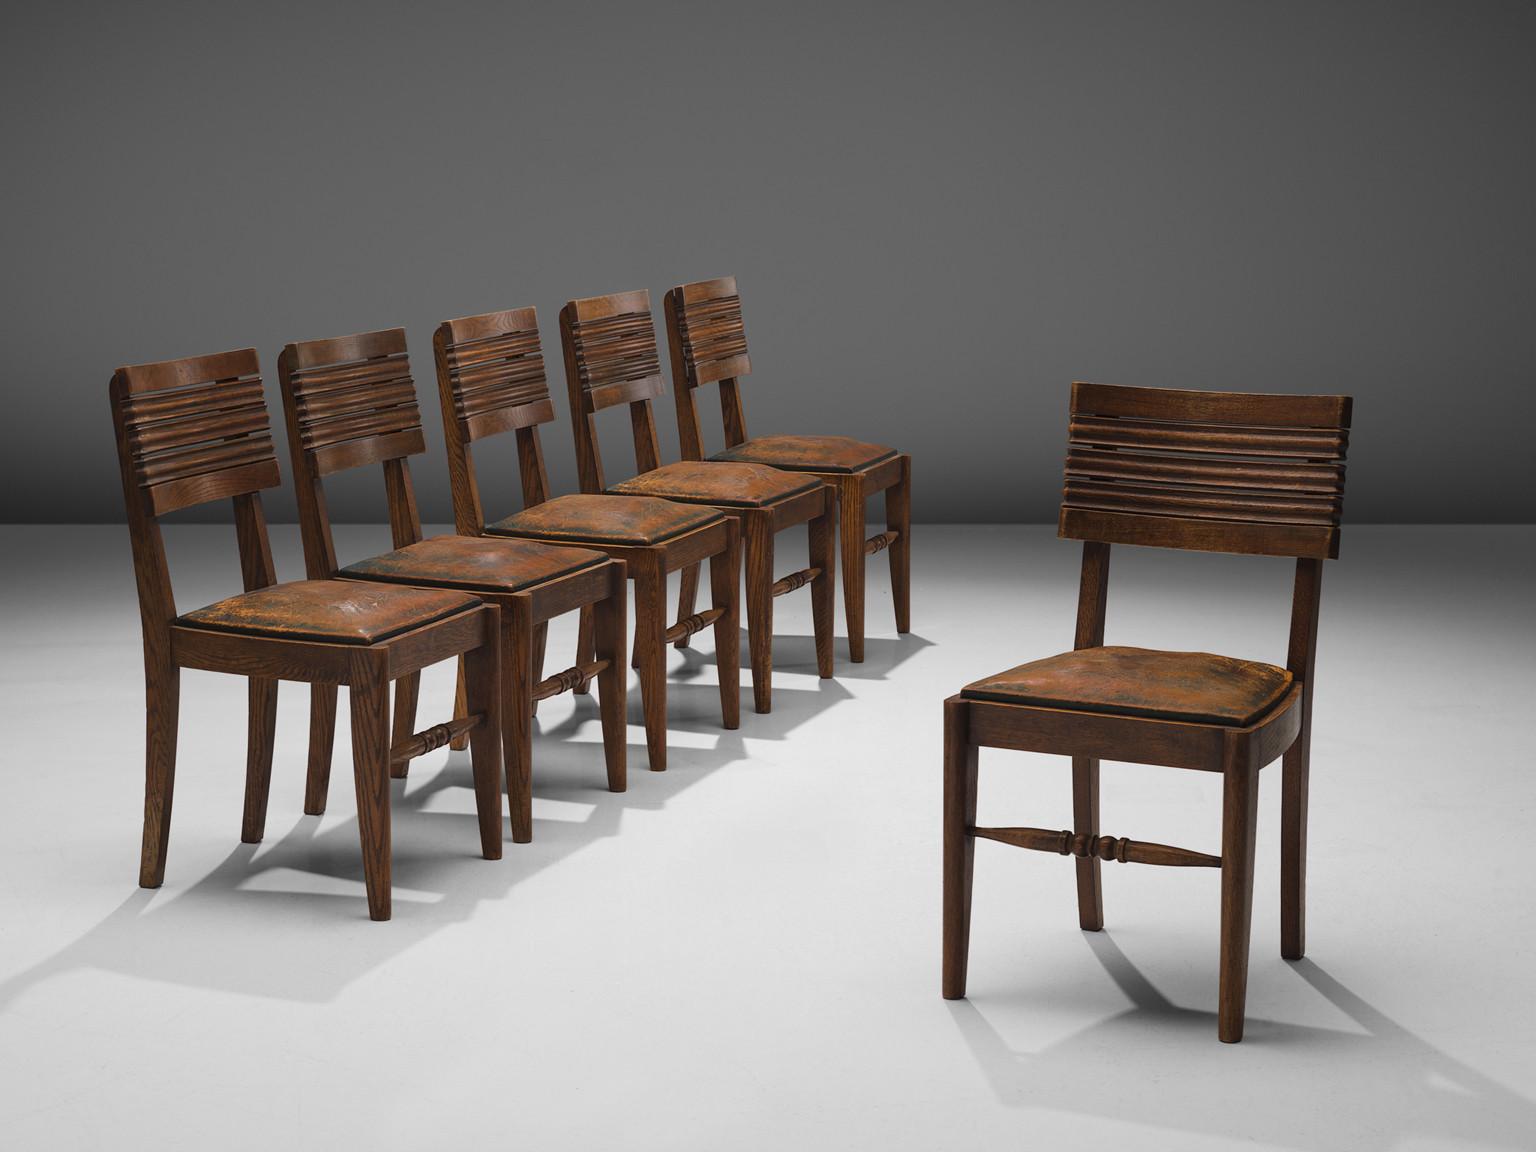 Gaston Poisson, Satz von sechs Esszimmerstühlen, Eiche, Leder, Frankreich, 1940er Jahre.

Esszimmerstühle aus massiver Eiche, mit schönen, detaillierten Schnitzereien und wunderschönem, patiniertem Leder. Die Rückenlehne des Stuhls besteht aus fünf